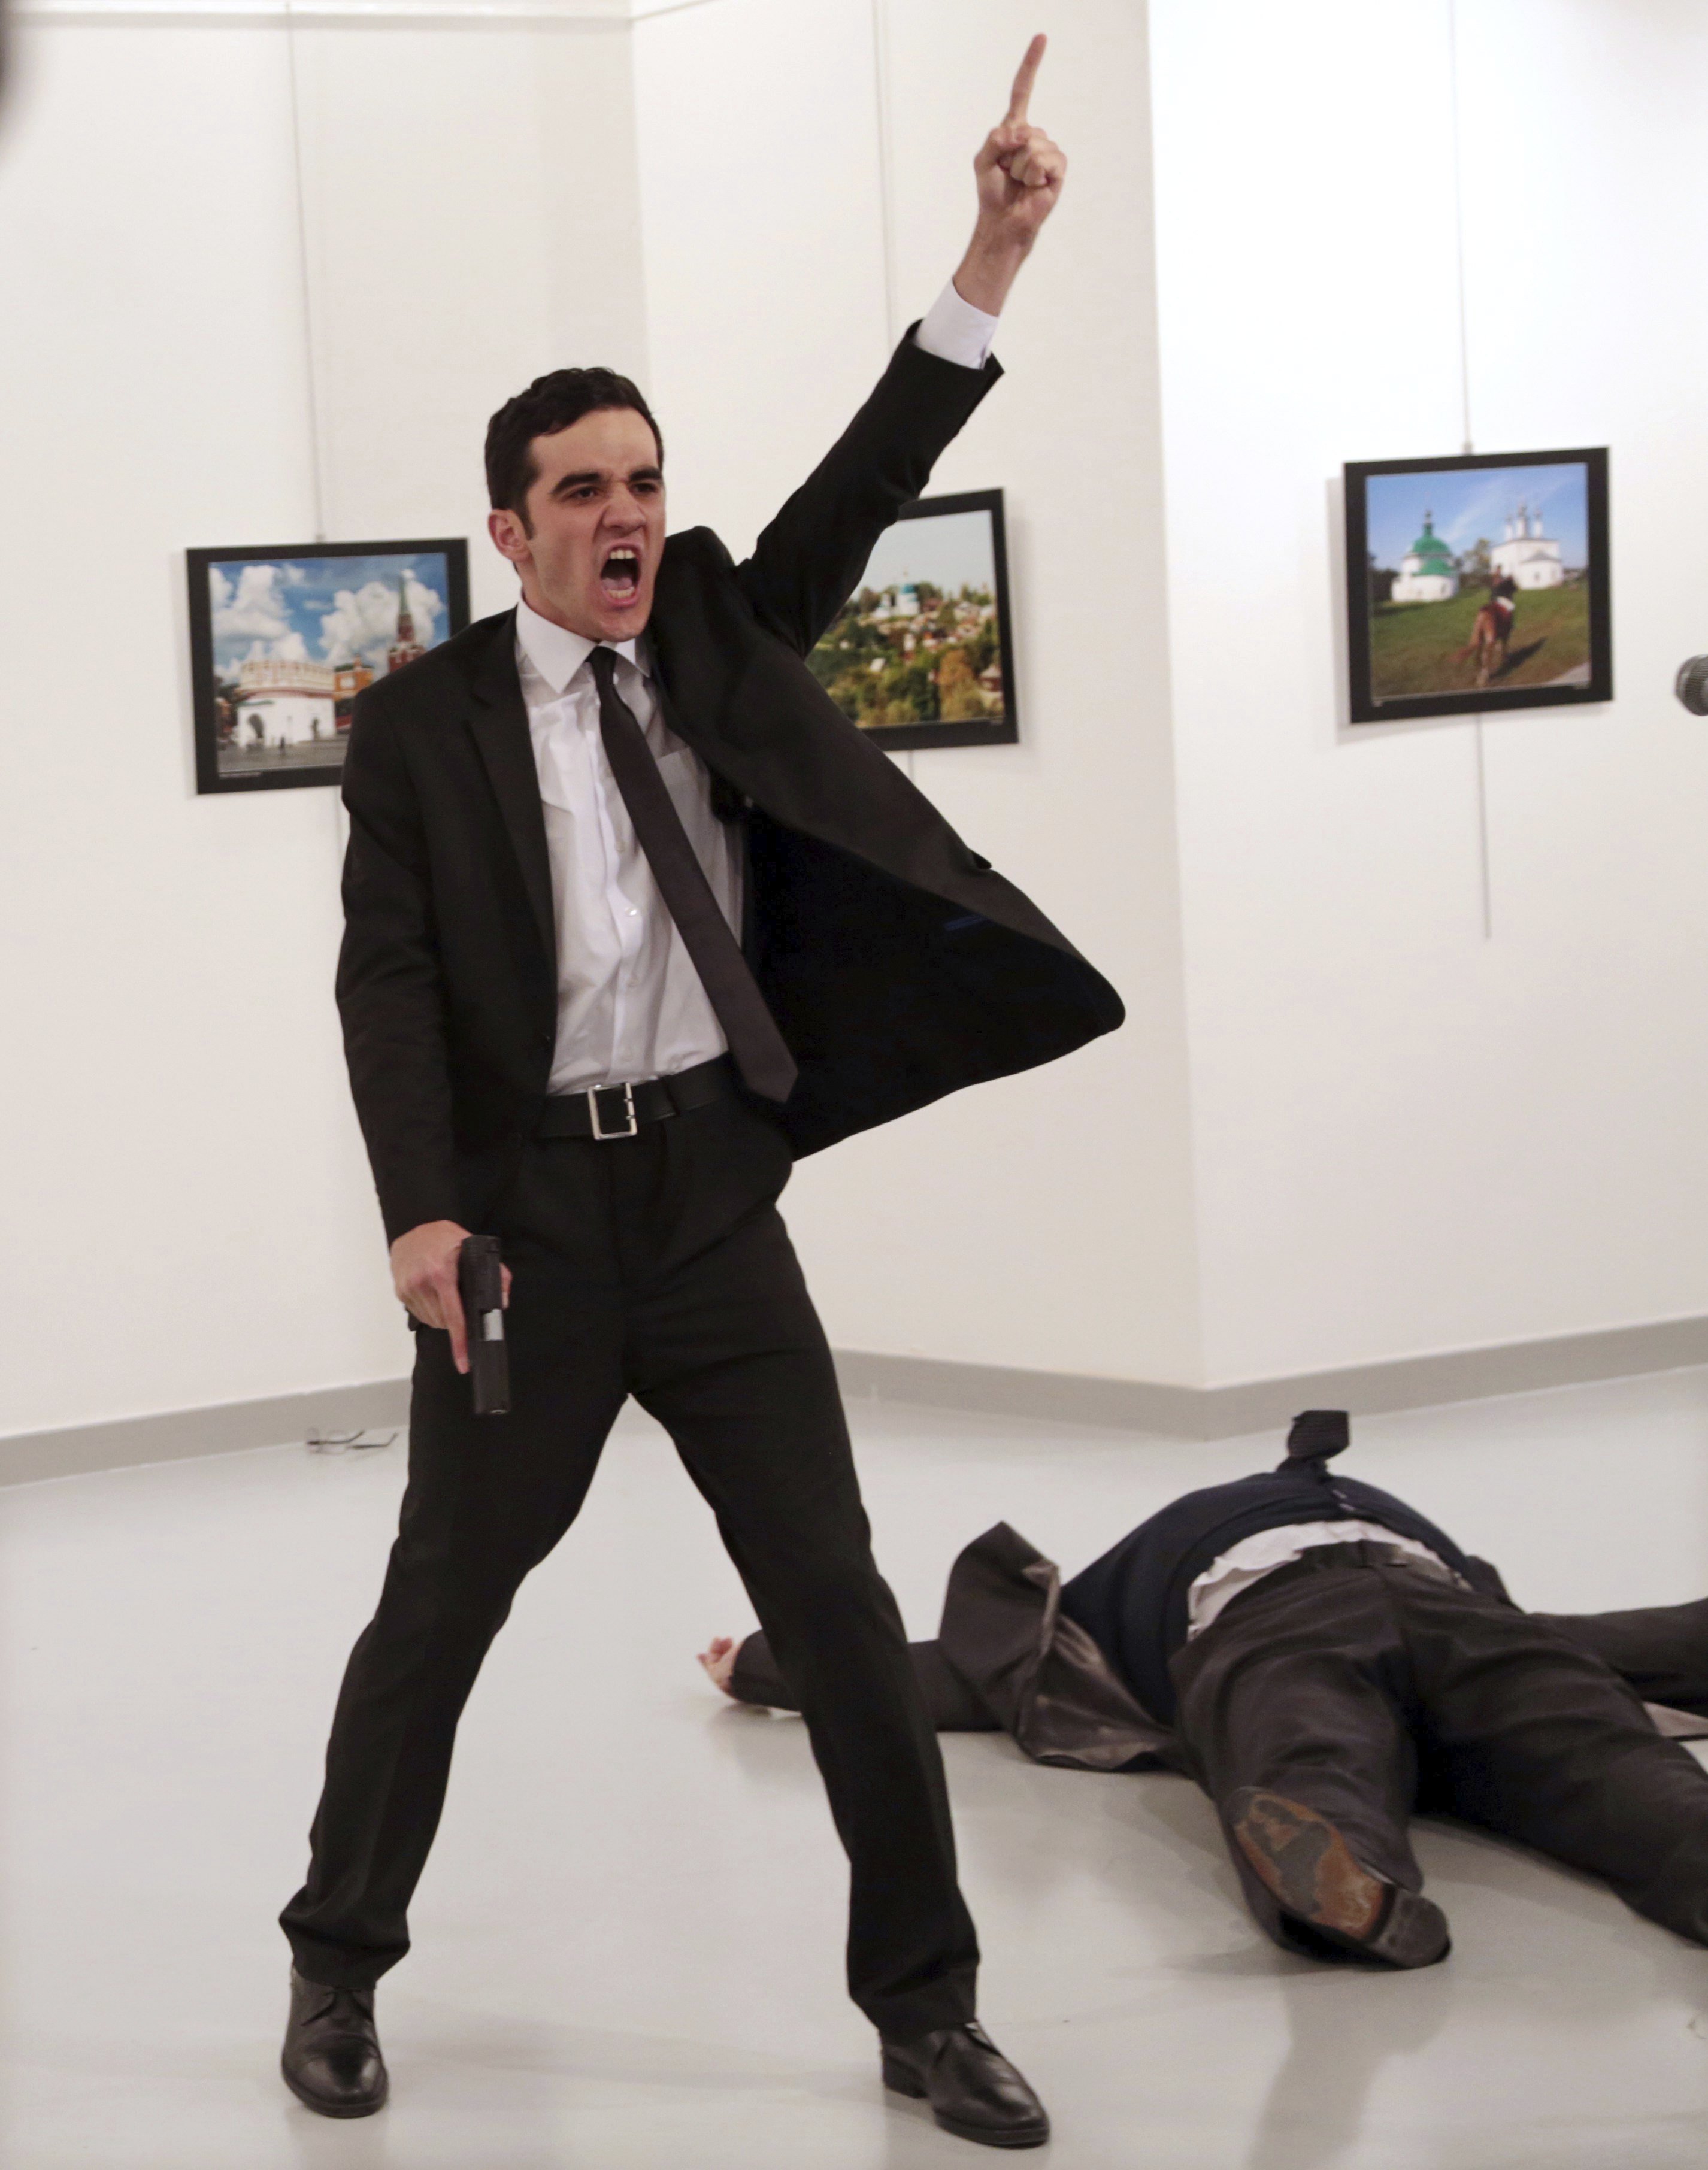 El World Press Photo sucumbe ante la imagen del asesino del embajador ruso.